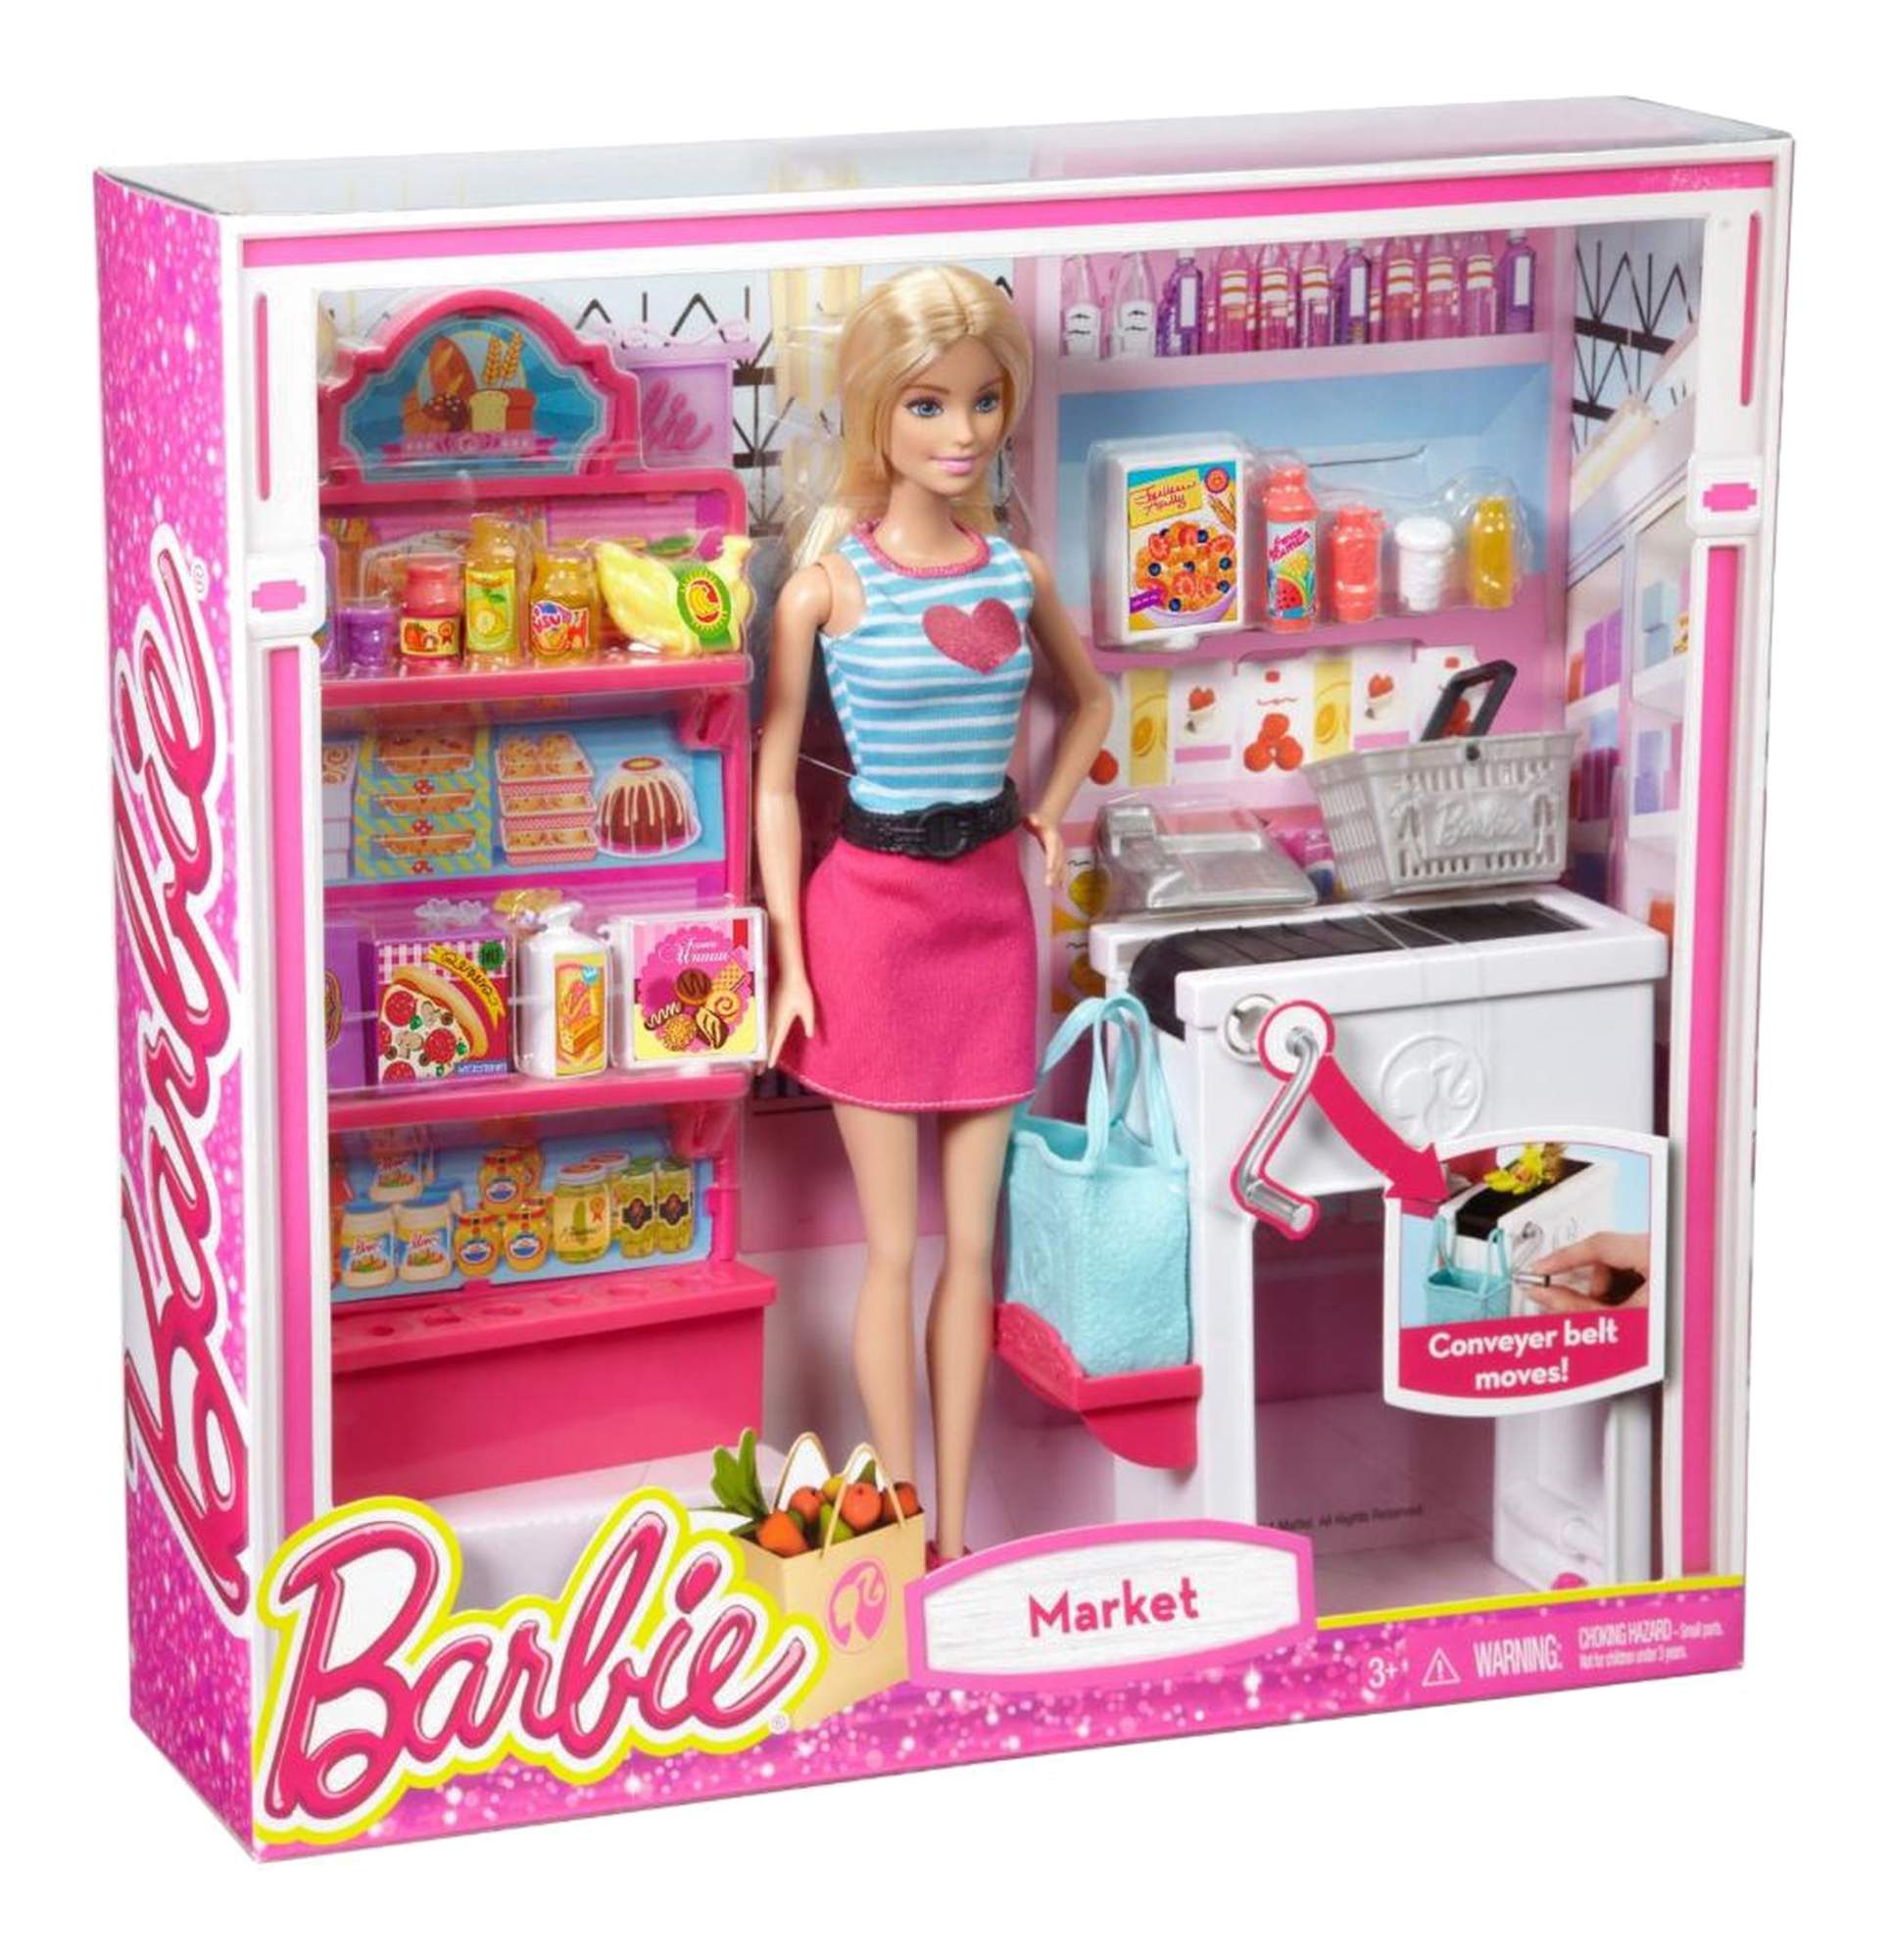 Куклы недорогие магазинов. Набор Barbie продуктовый магазин Малибу, 29 см, ckp77. Кукла Барби Mattel супермаркет.